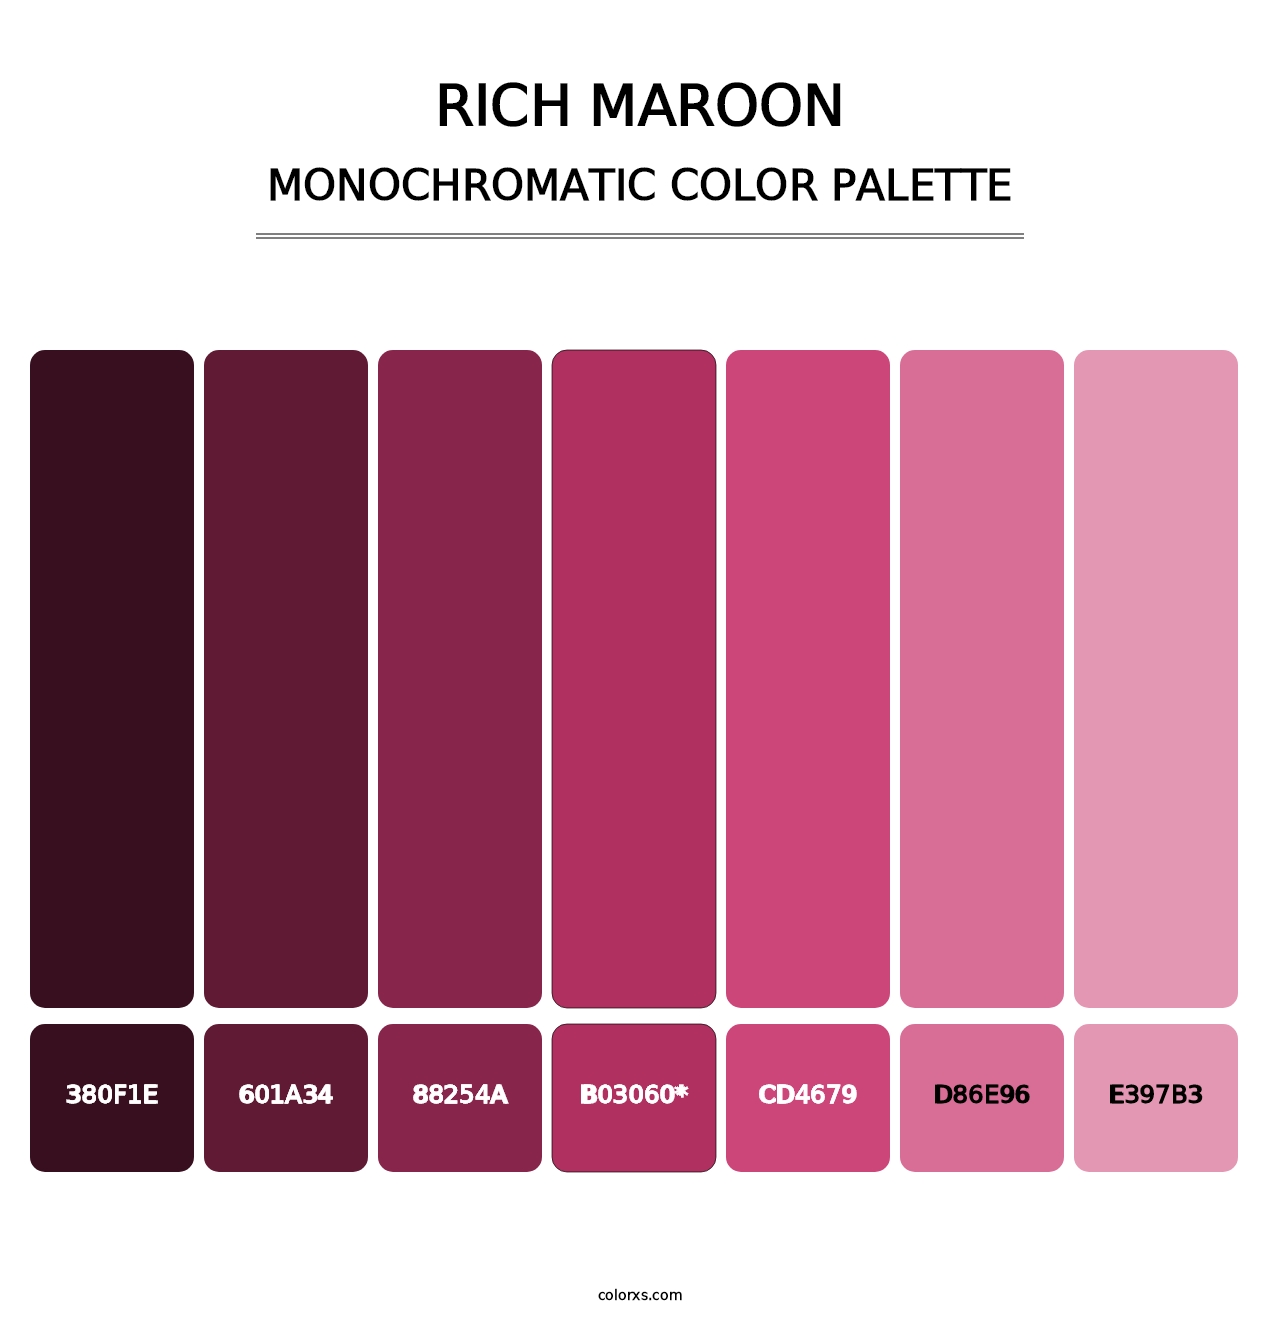 Rich Maroon - Monochromatic Color Palette